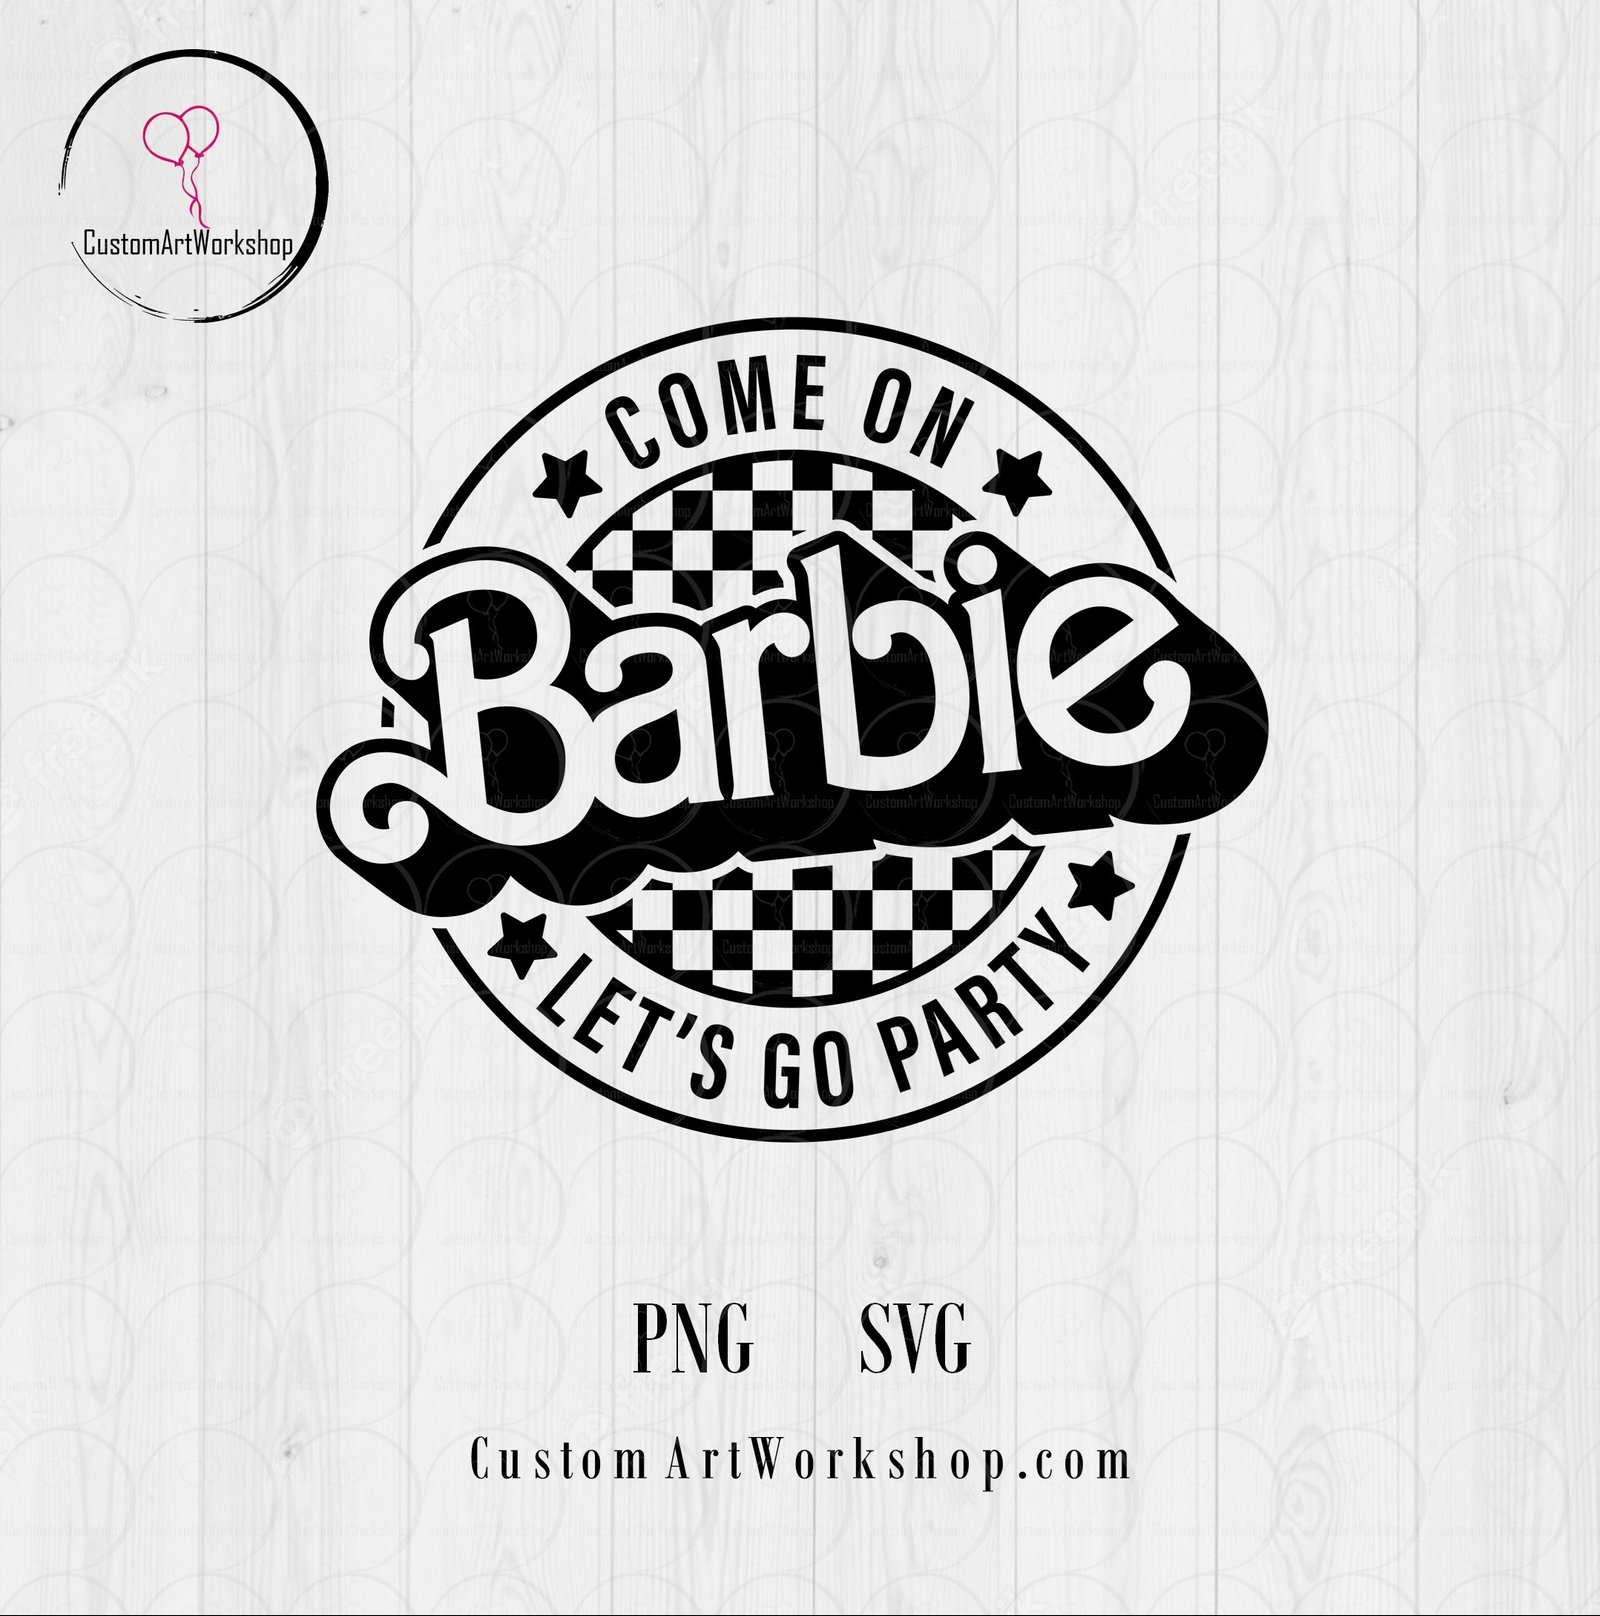 Come On Barbie Animated Digital File Instant Download Custom Art Workshop